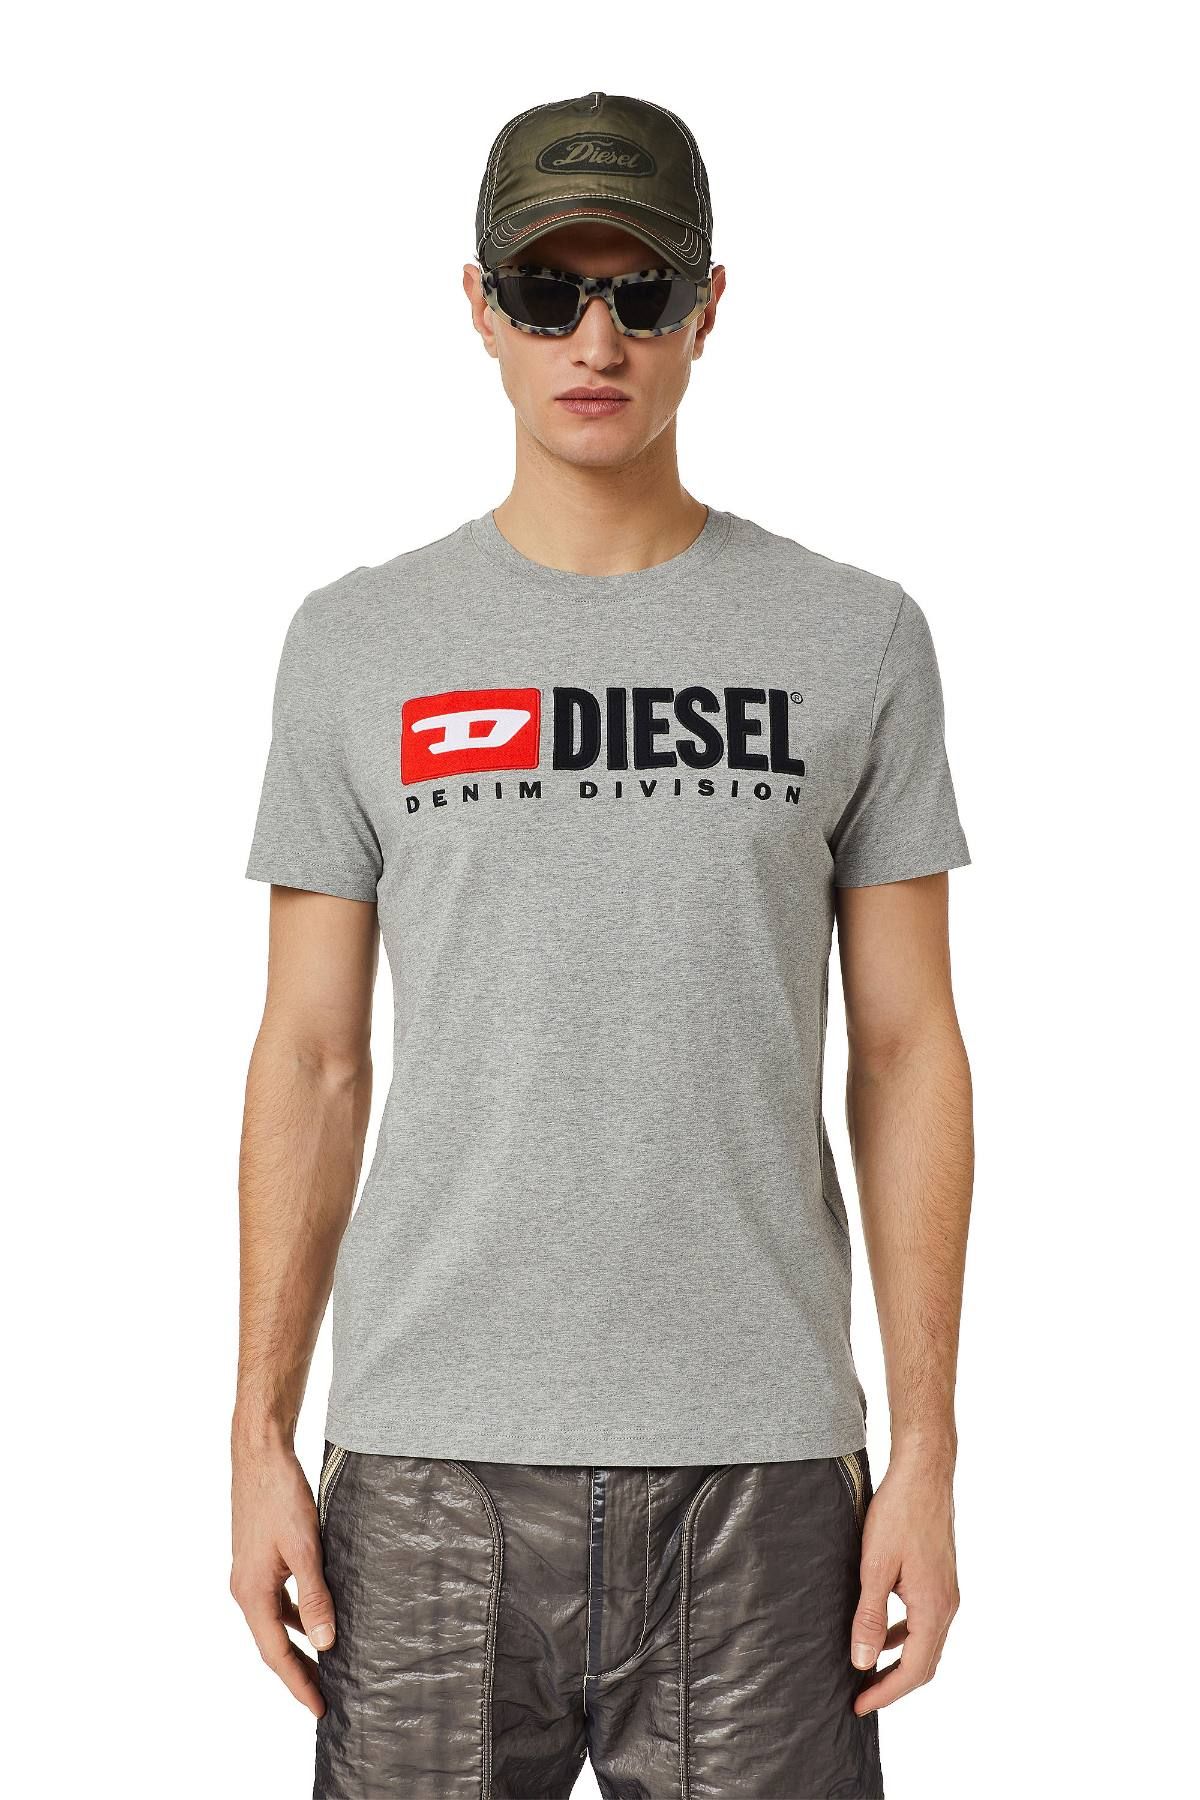 VTG Diesel Denim Division Black Center Logo T-Shirt | eBay